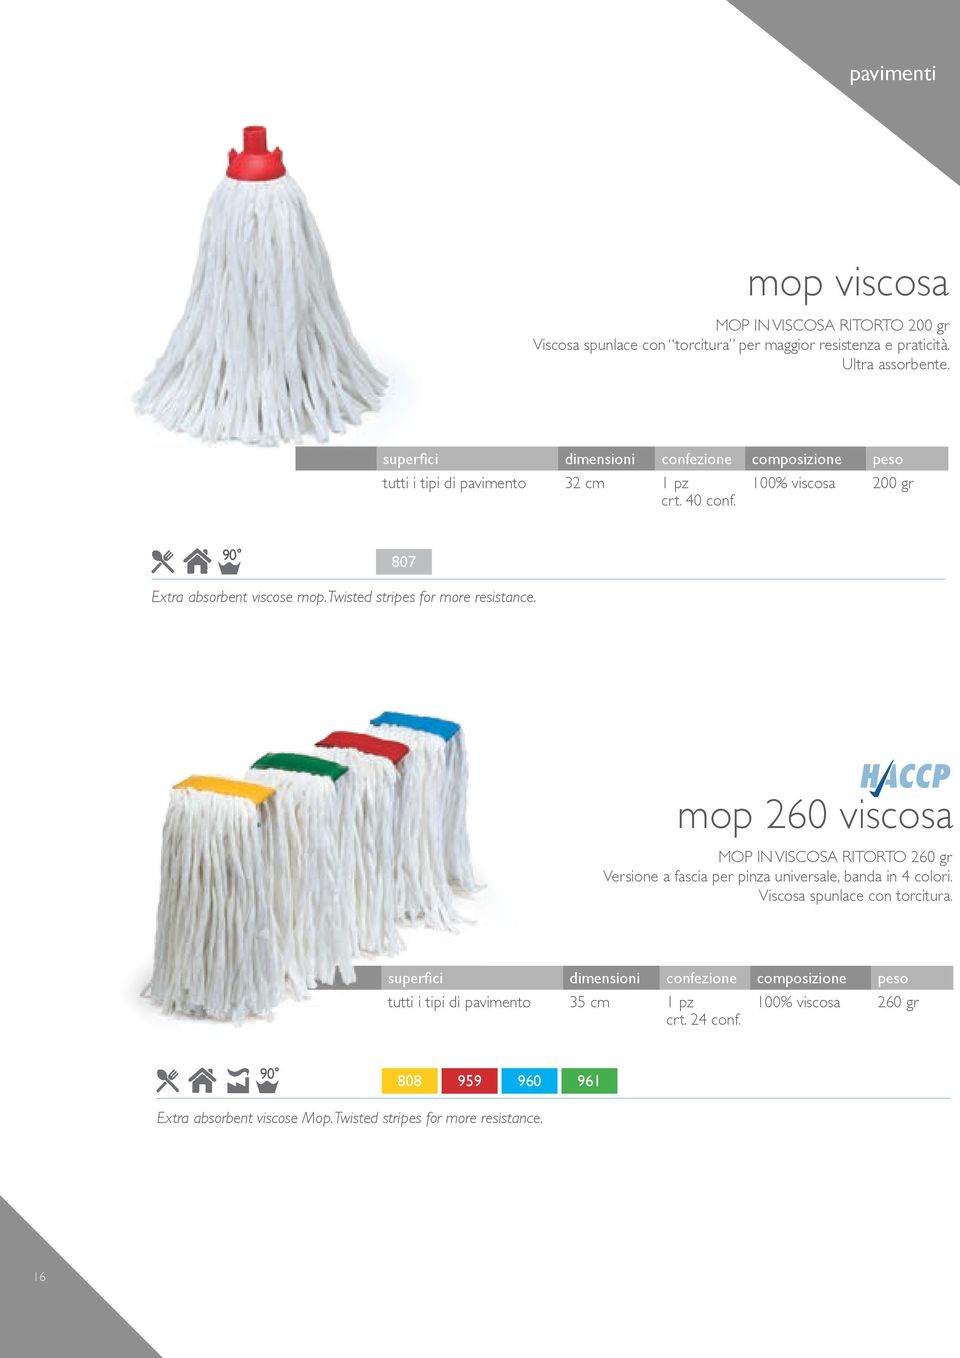 mop 260 viscosa MOP IN VISCOSA RITORTO 260 gr Versione a fascia per pinza universale, banda in 4 colori. Viscosa spunlace con torcitura.